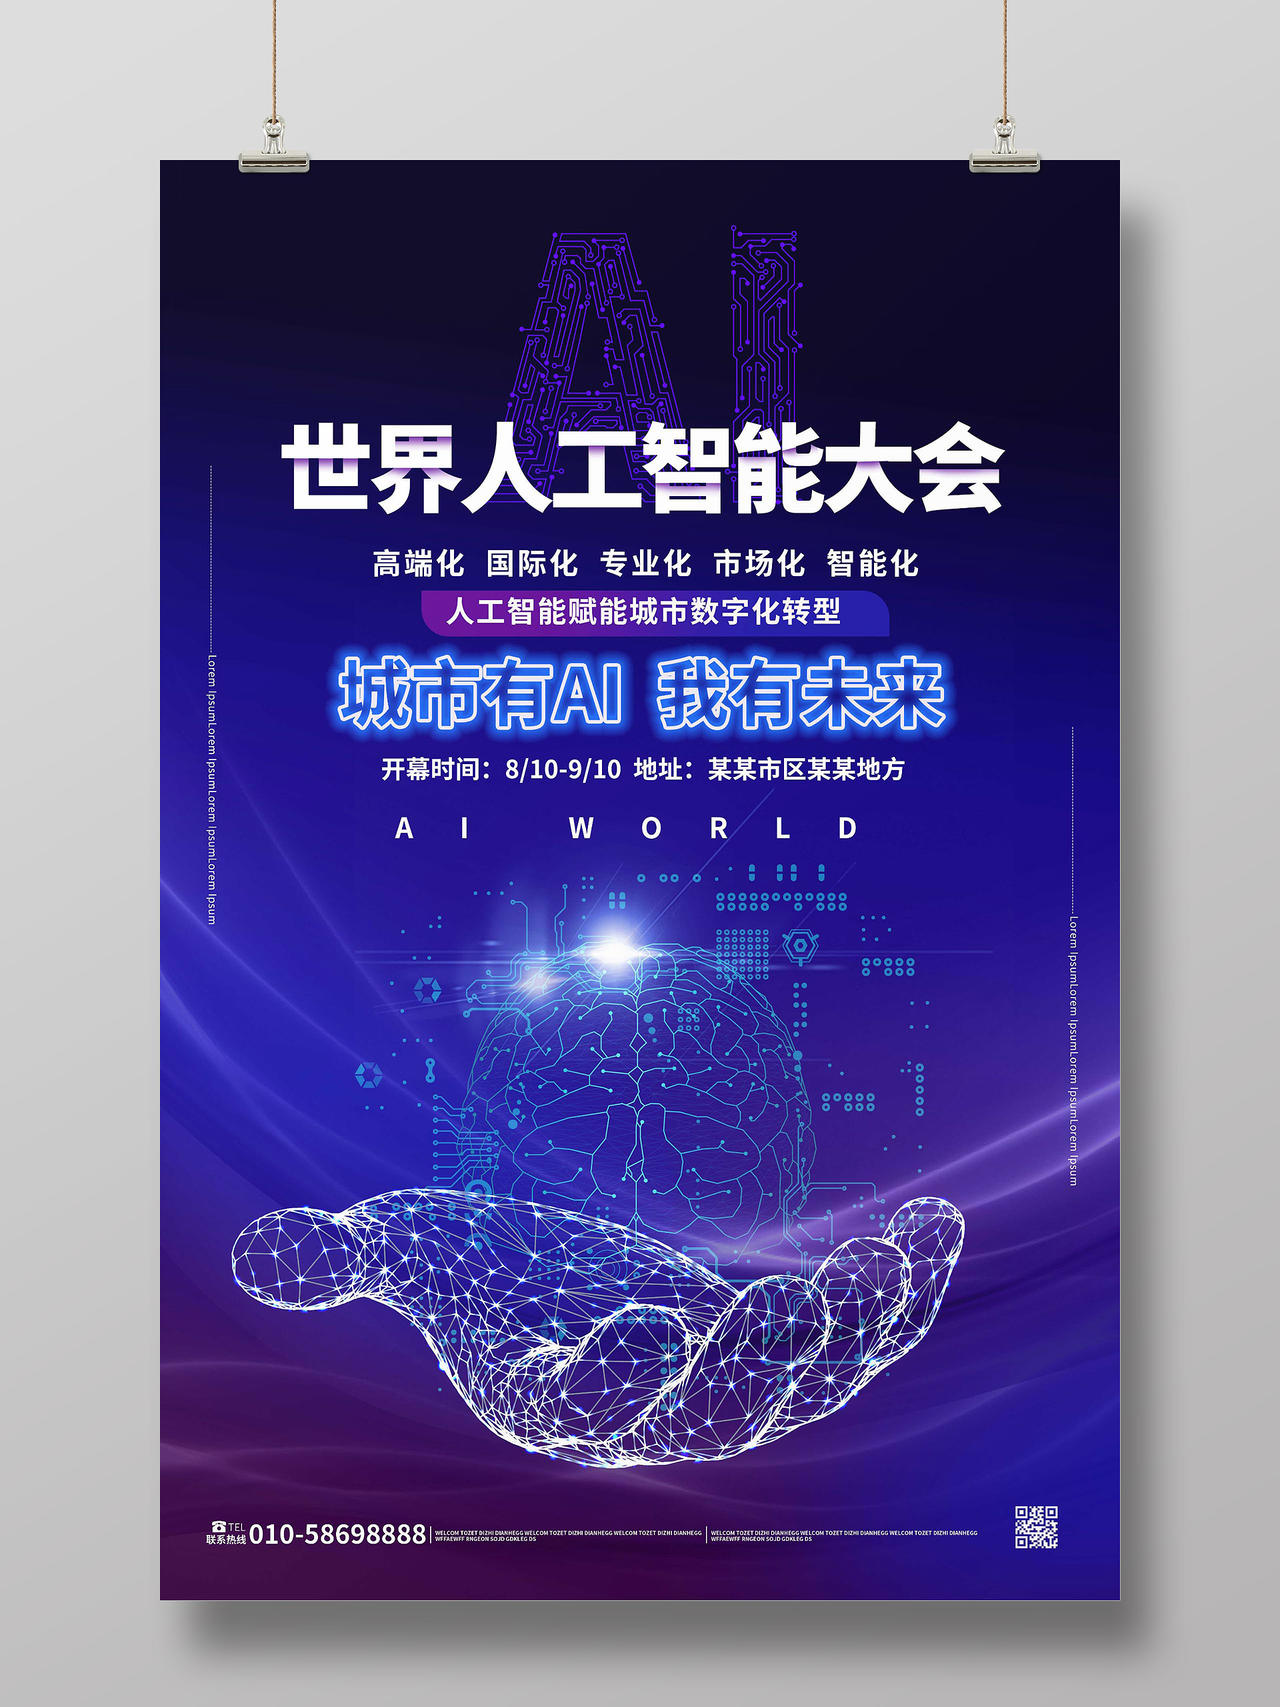 蓝紫色大气简洁世界人工智能大会宣传海报设计